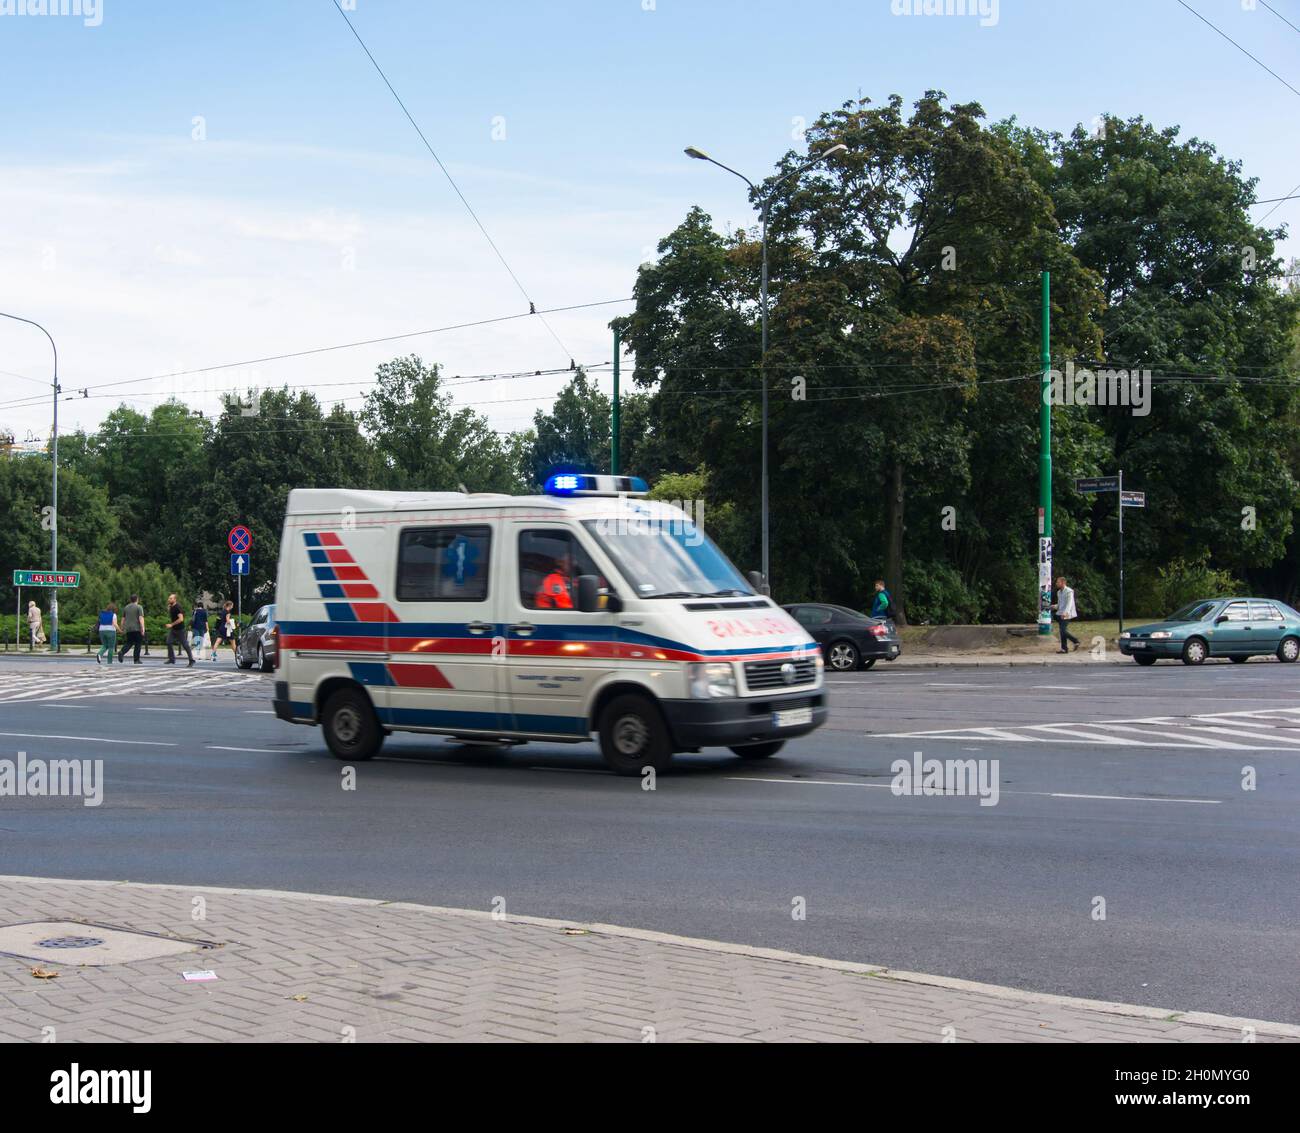 POZNAN, POLONIA - 28 ago 2013: Ambulanza con luci che guidano un incrocio nel centro di Poznan, Polonia Foto Stock